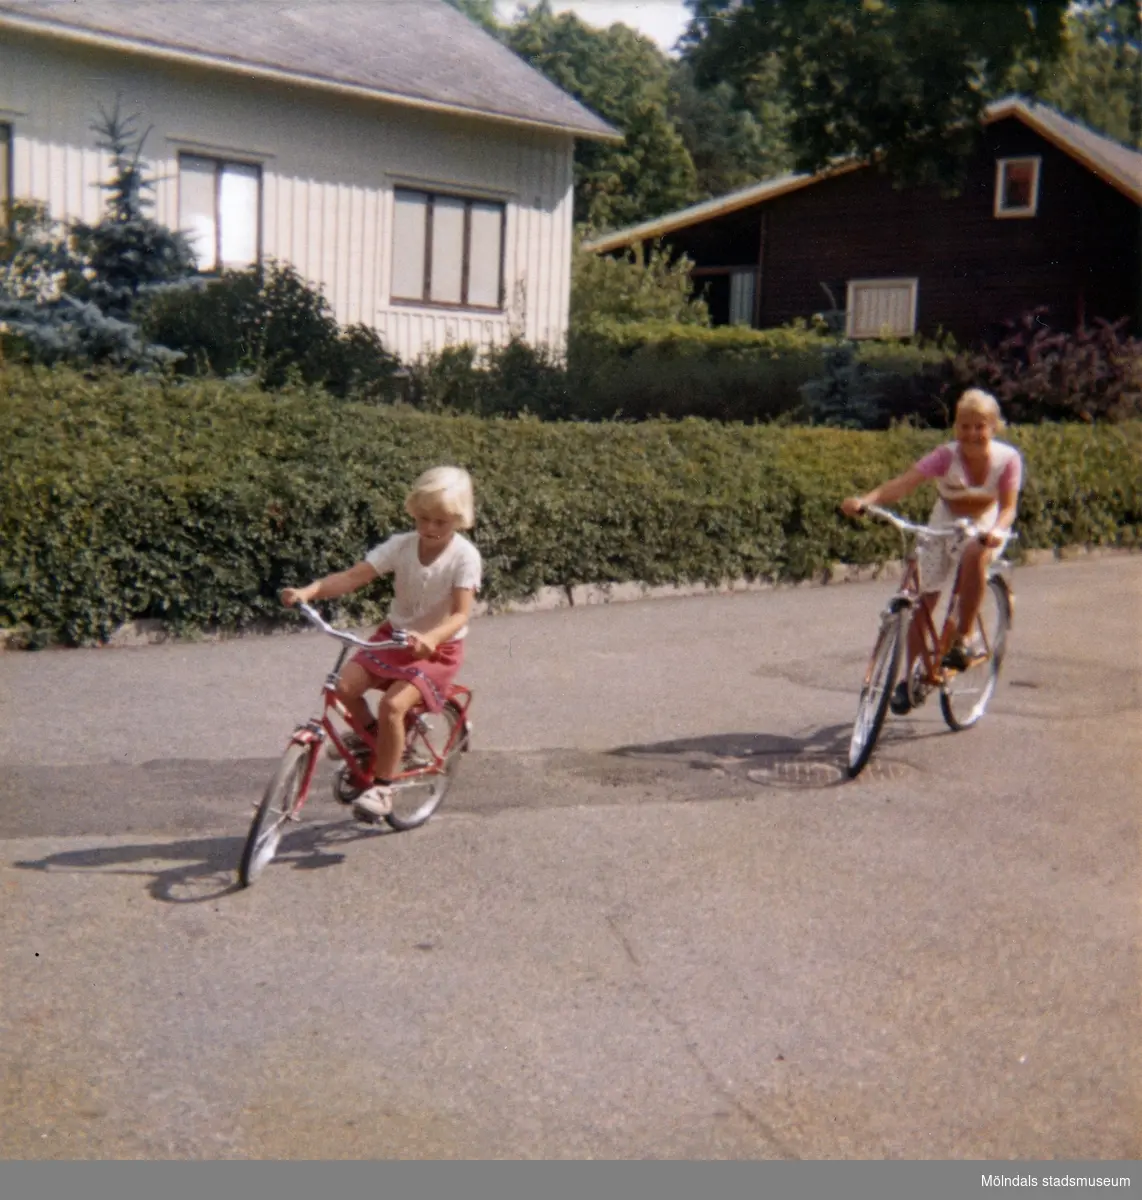 Systrarna Christine och Ingela cyklar på vändplanen i "Stusshålan" på Kryssgatan i Mölndal. På den här gatan lärde sig Christine att cykla. Ca 1976.